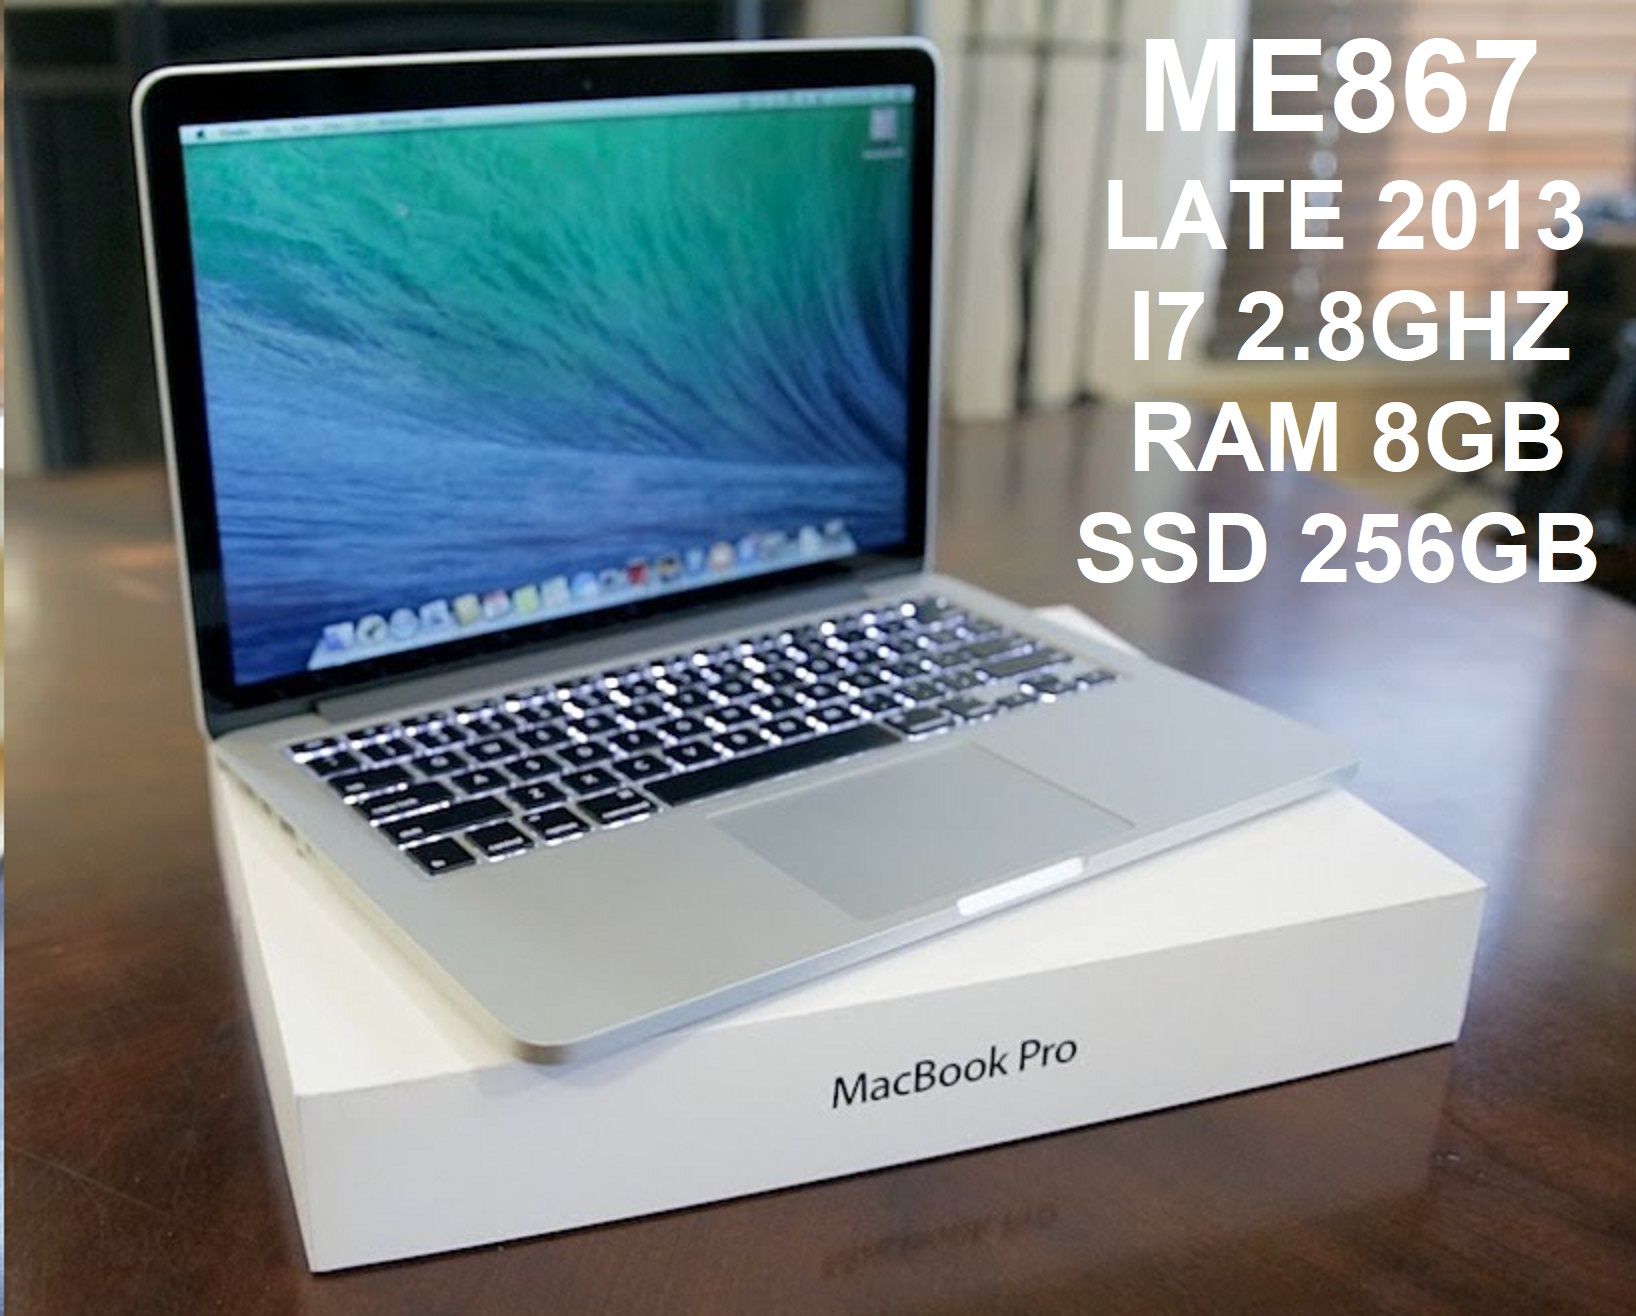 ME867 LATE 2013 I7-4558U 2.8GHZ, RAM 8GB, SSD 256GB